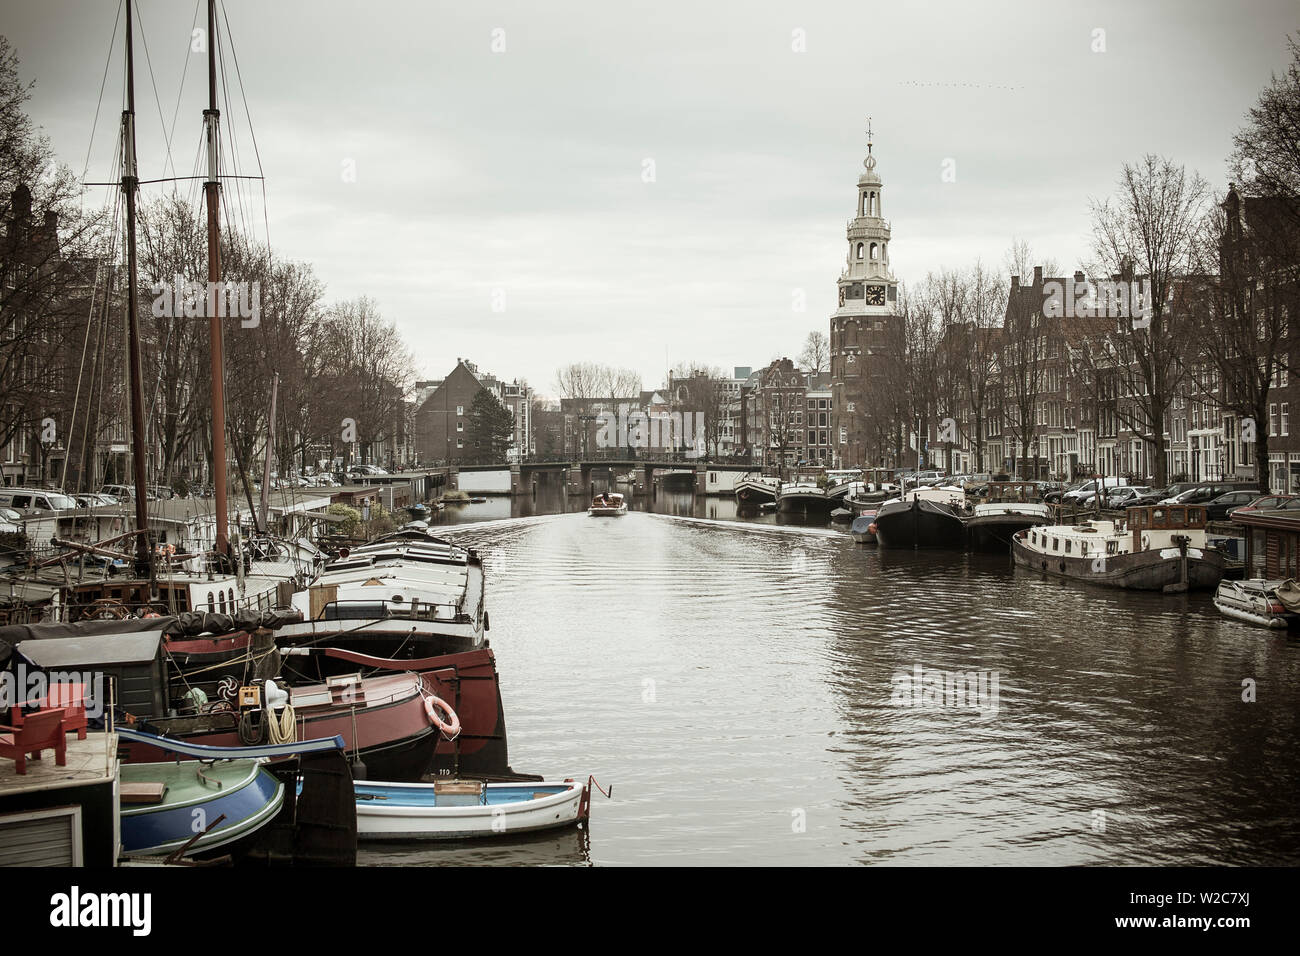 Montelbaanstoren Tower, oudeschans Kanal, Amsterdam, Holland Stockfoto